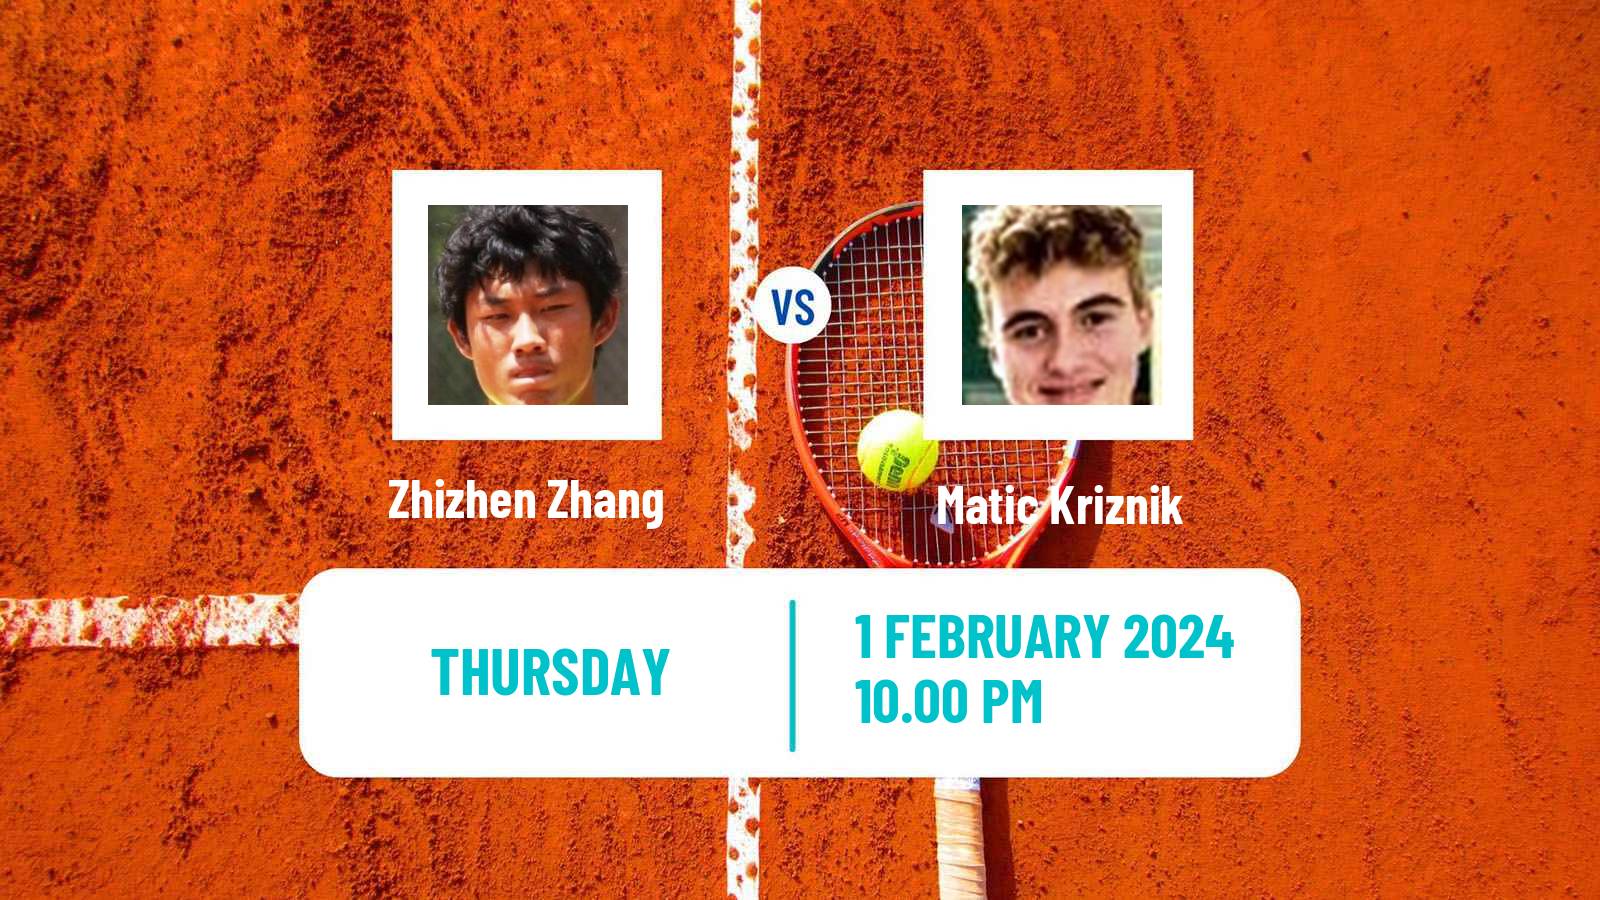 Tennis Davis Cup World Group II Zhizhen Zhang - Matic Kriznik